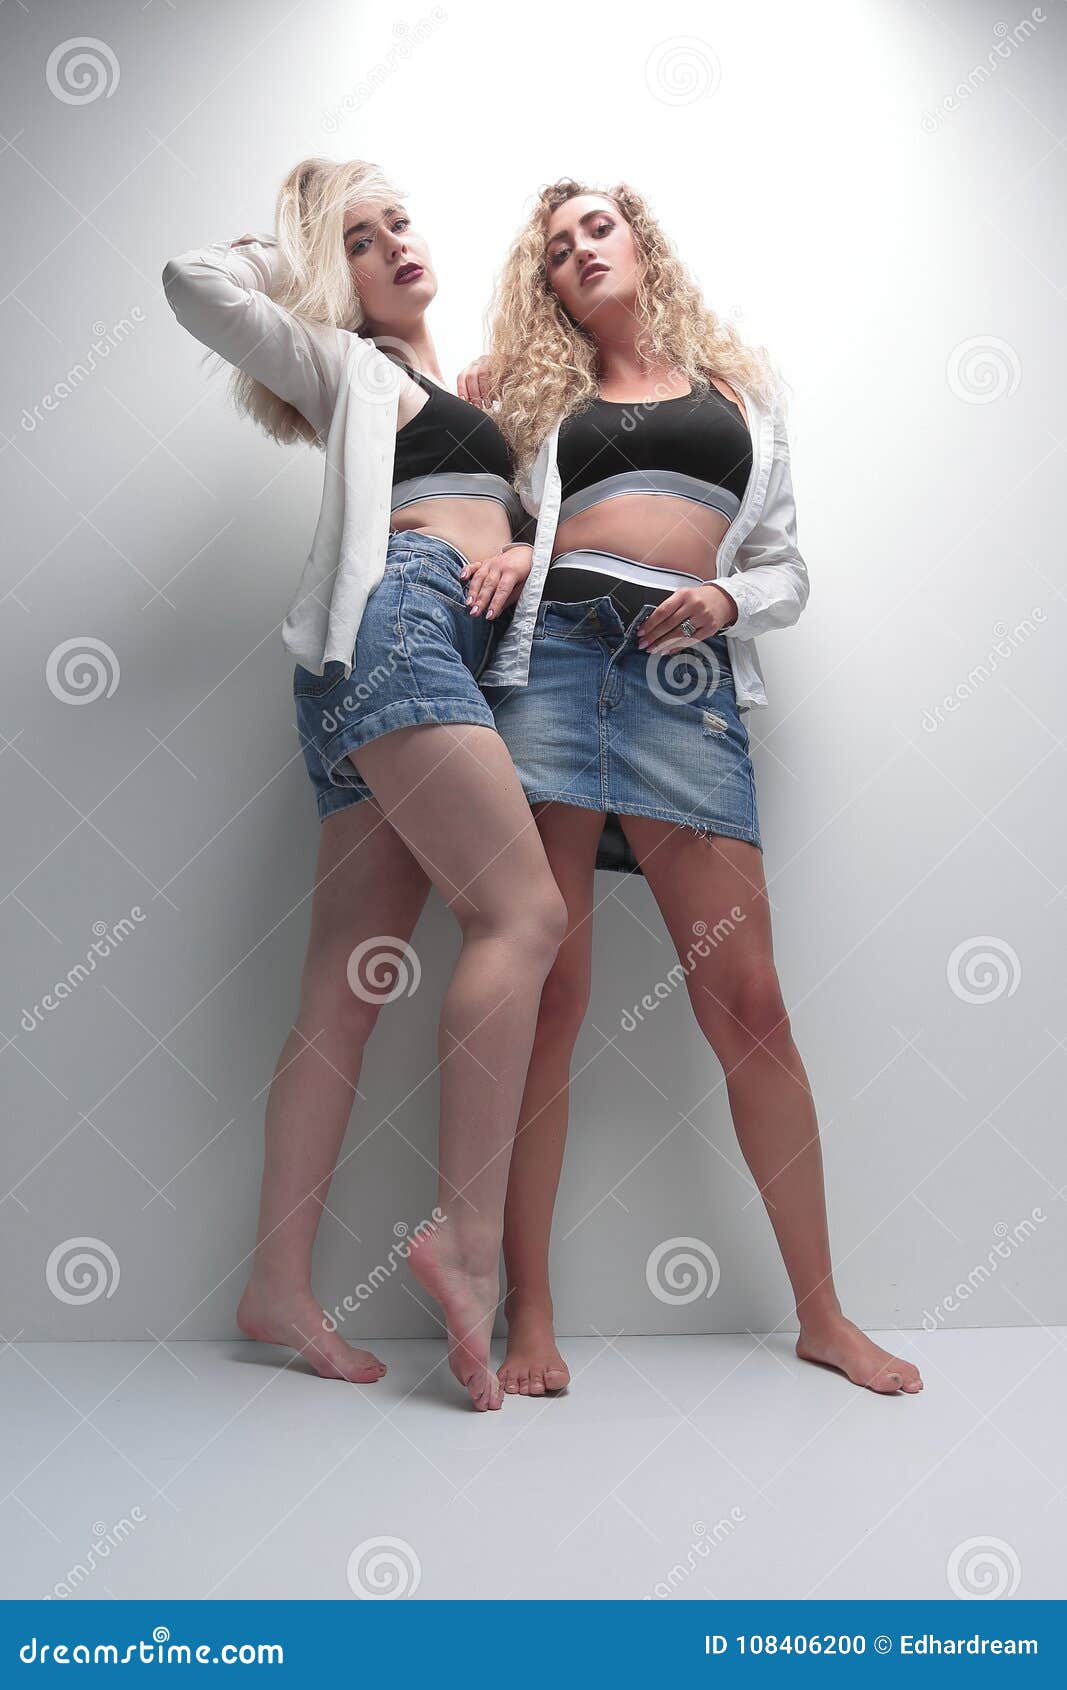 Две сексуальные девушки фото